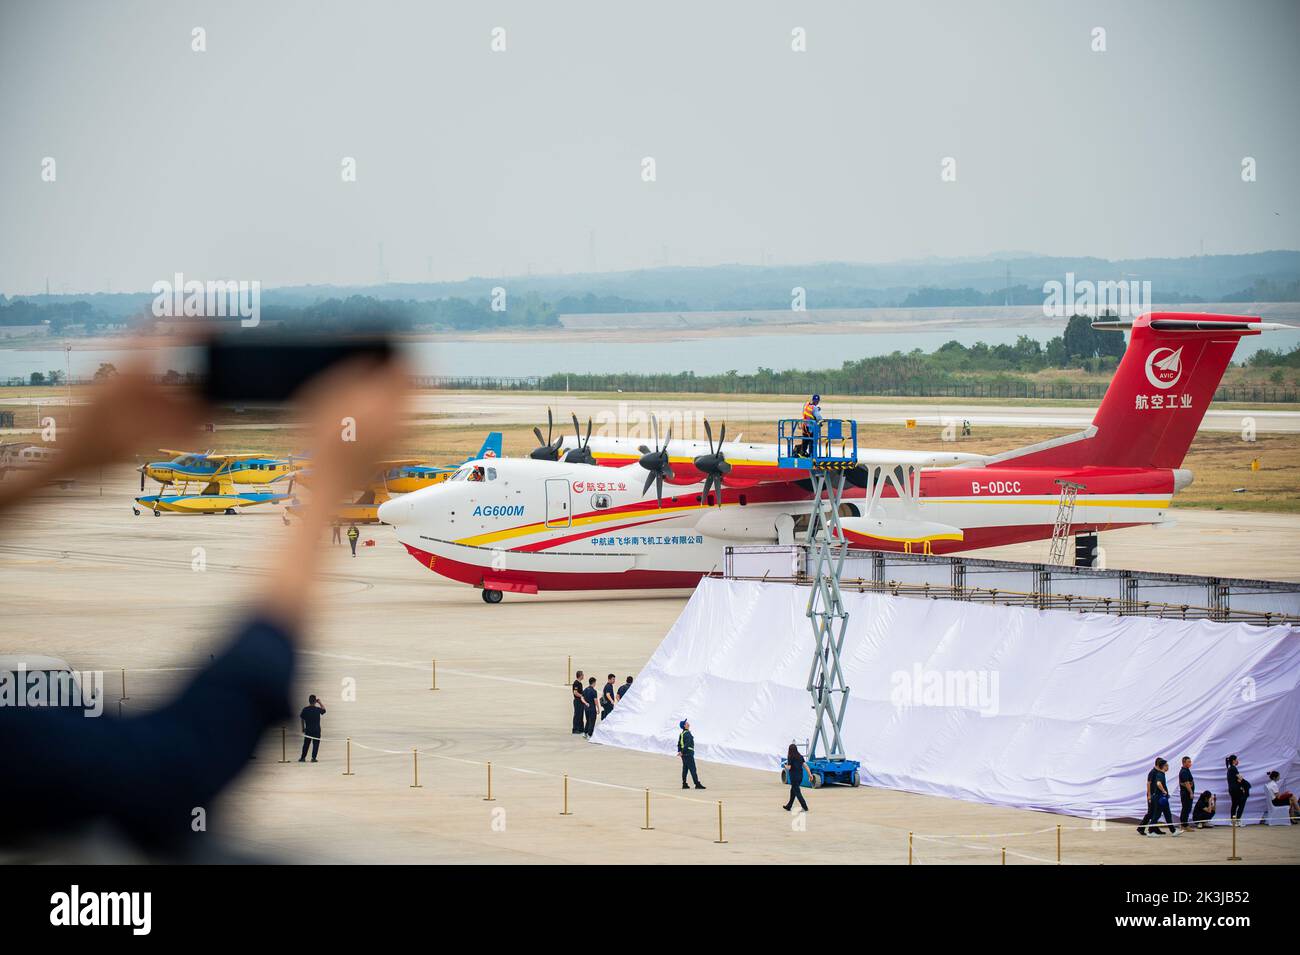 Jingmen, provincia china de Hubei. 27th de Sep de 2022. Un visitante toma una fotografía de un avión de combate contra incendios AG600M en Jingmen, en la provincia de Hubei, en China central, el 27 de septiembre de 2022. Con el nombre en código Kunlong, la familia de aviones anfibio grandes de AG600 se considera equipo aeronáutico clave para el sistema de rescate de emergencia de China. Fue desarrollado por la Aviation Industry Corporation of China (AVIC), el fabricante de aviones líder del país, para satisfacer las necesidades de las misiones de combate de incendios y rescate marítimo, así como otras operaciones críticas de rescate de emergencia. Crédito: Wu Zhizun/Xinhua/Alamy Live News Foto de stock